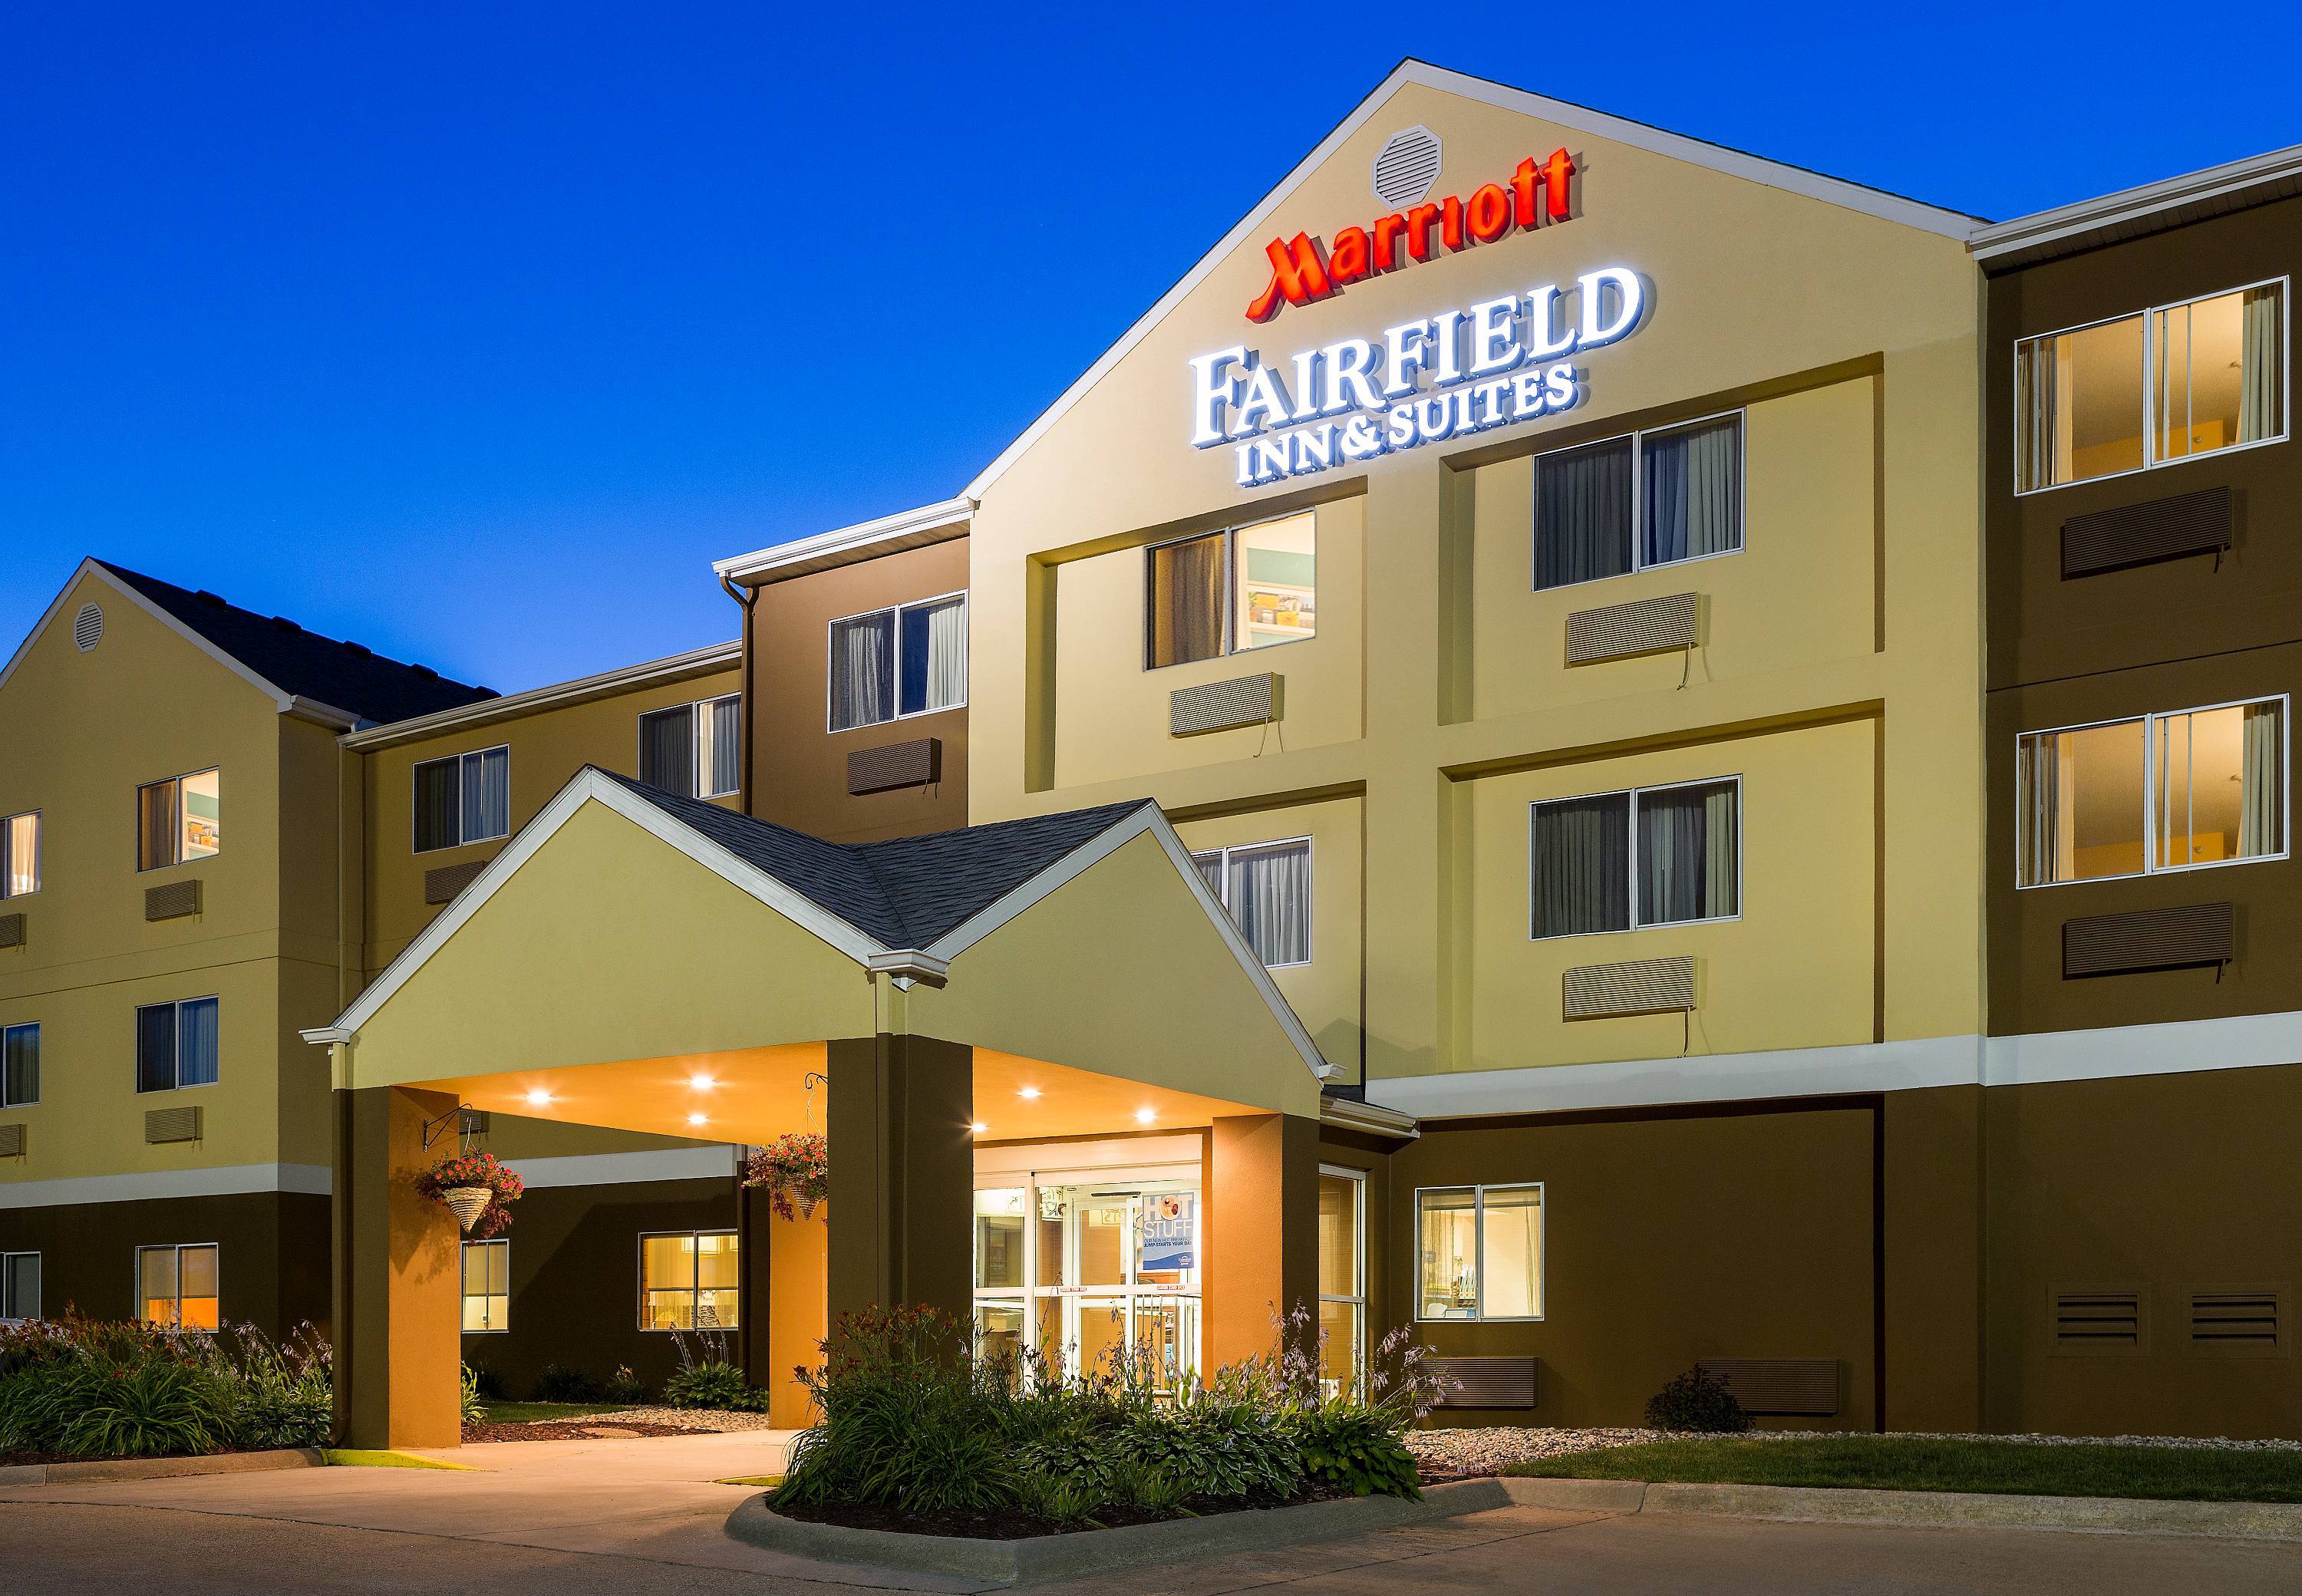 Photo of Fairfield Inn & Suites by Marriott Oshkosh, Oshkosh, WI